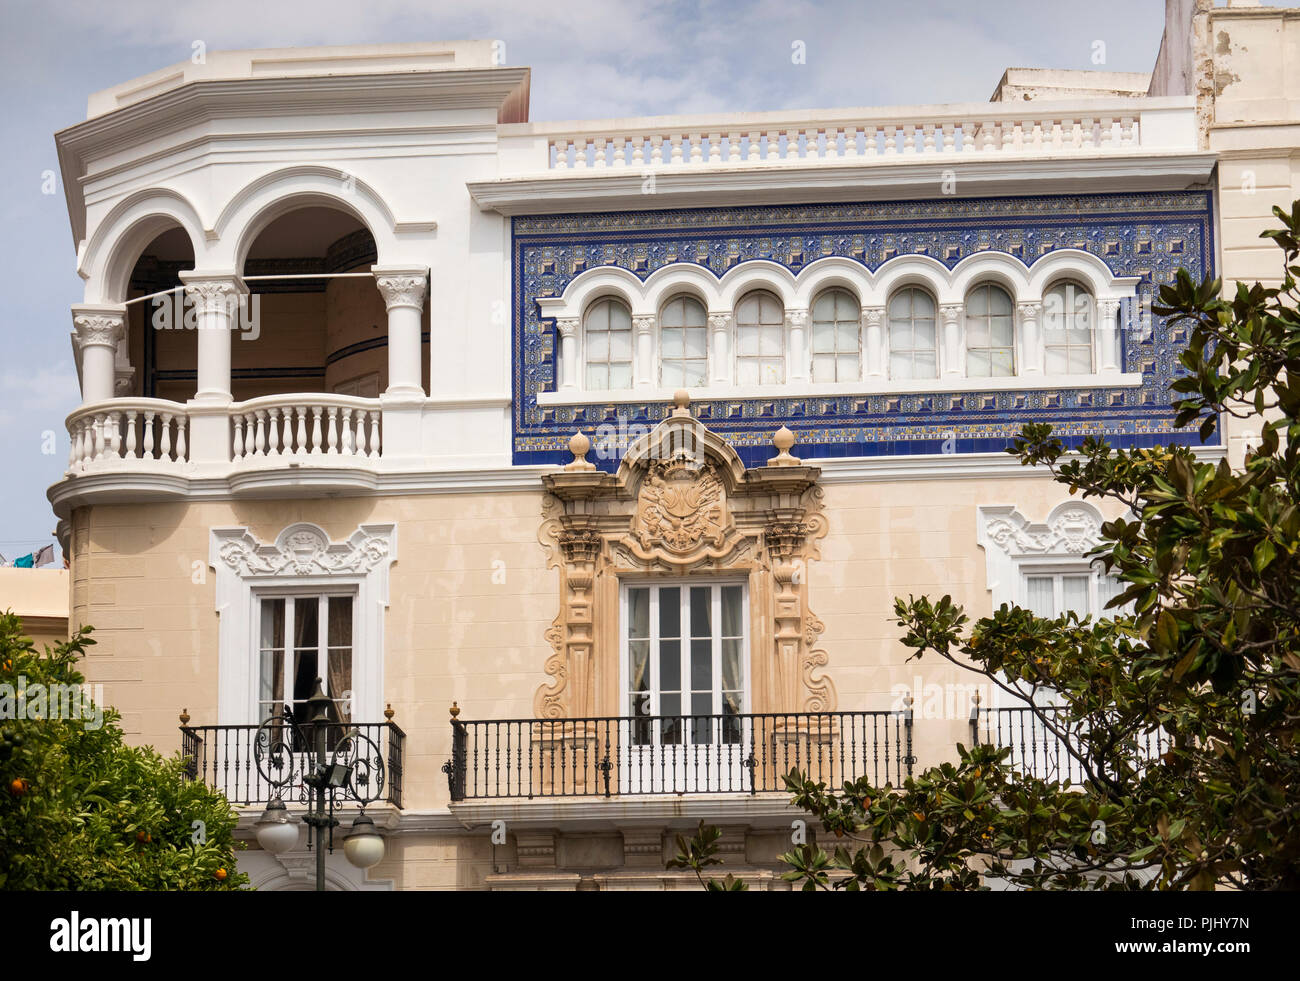 Spagna,Cadiz, Plaza San Antonio elegante casa in un angolo della piazza Foto Stock